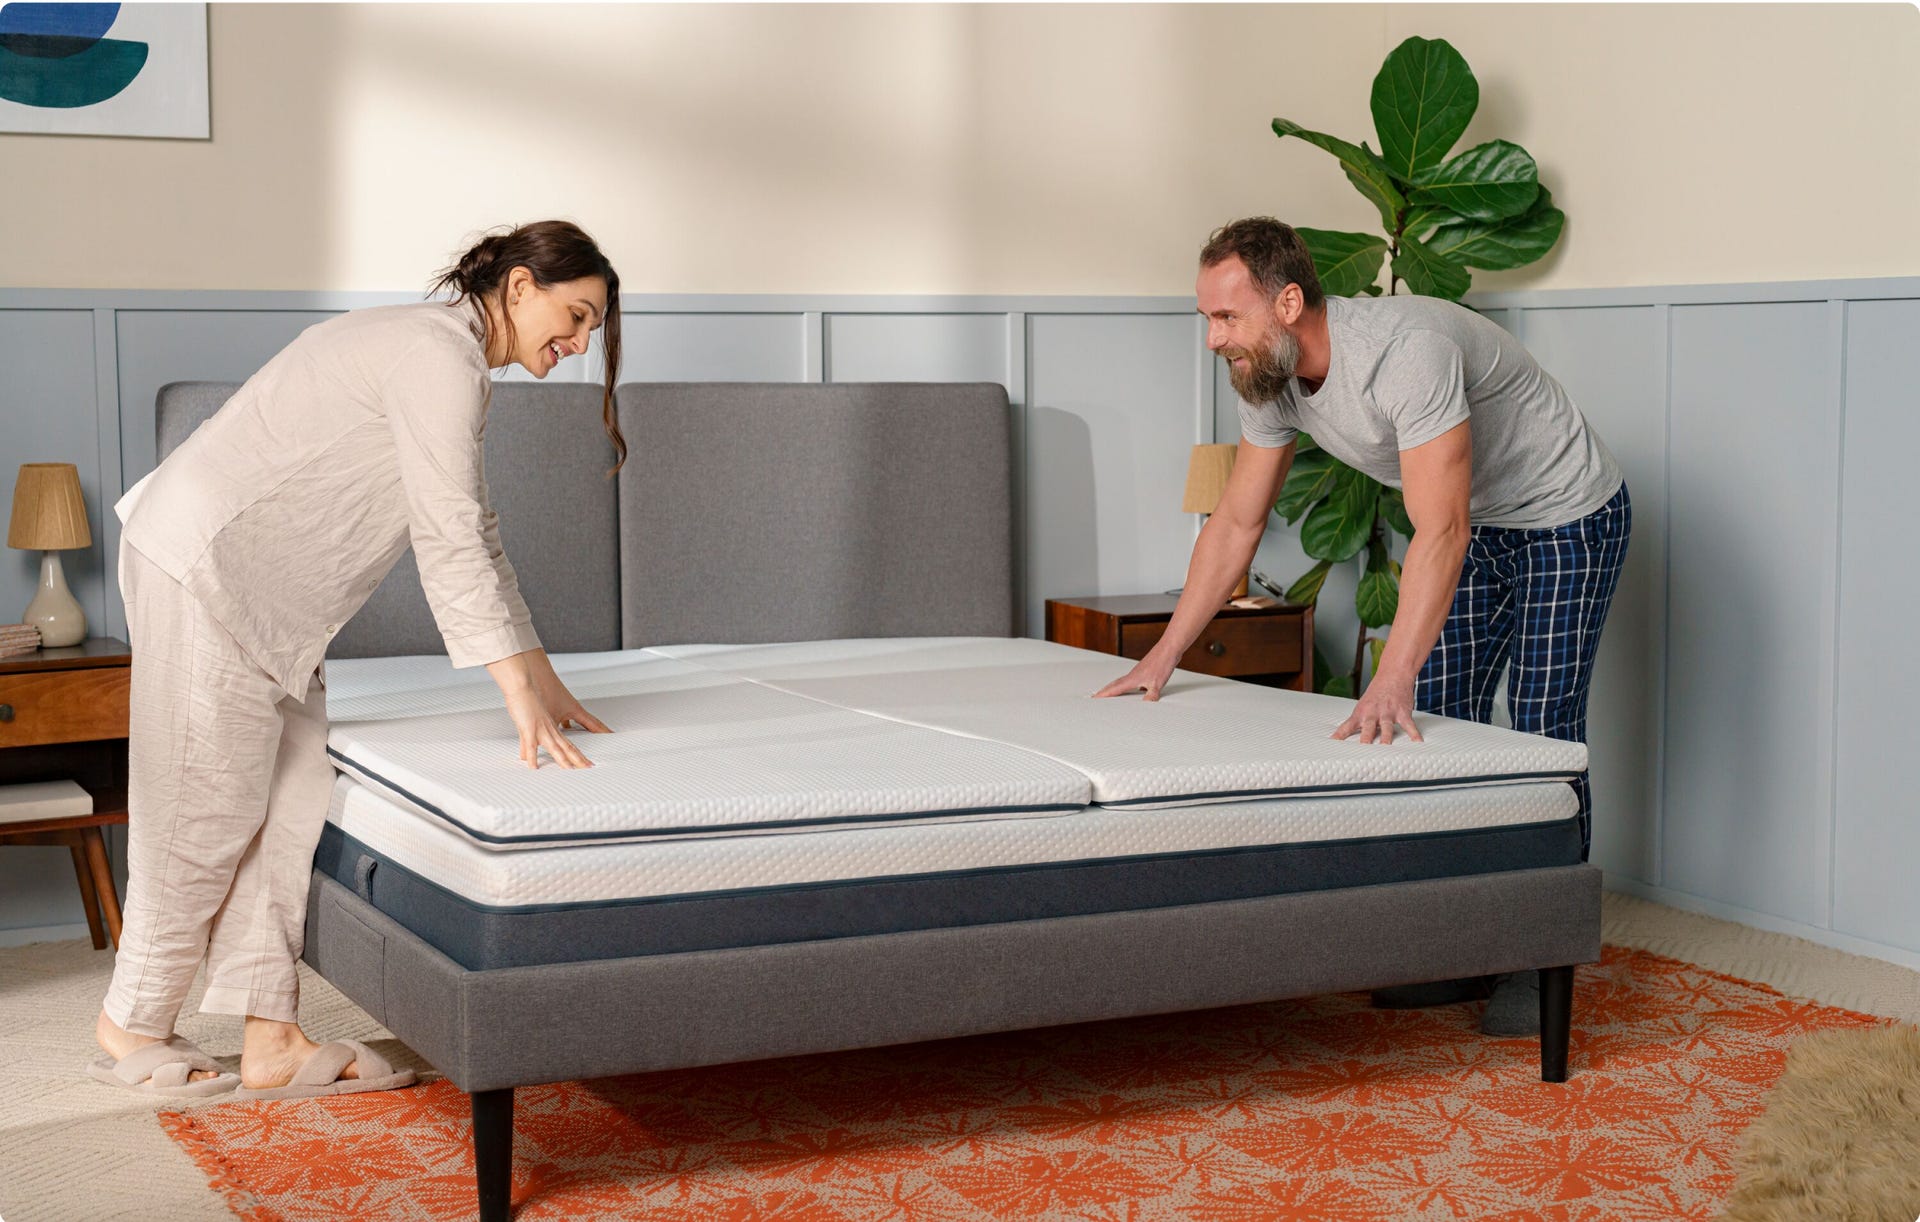 mattress topper extend life of mattress